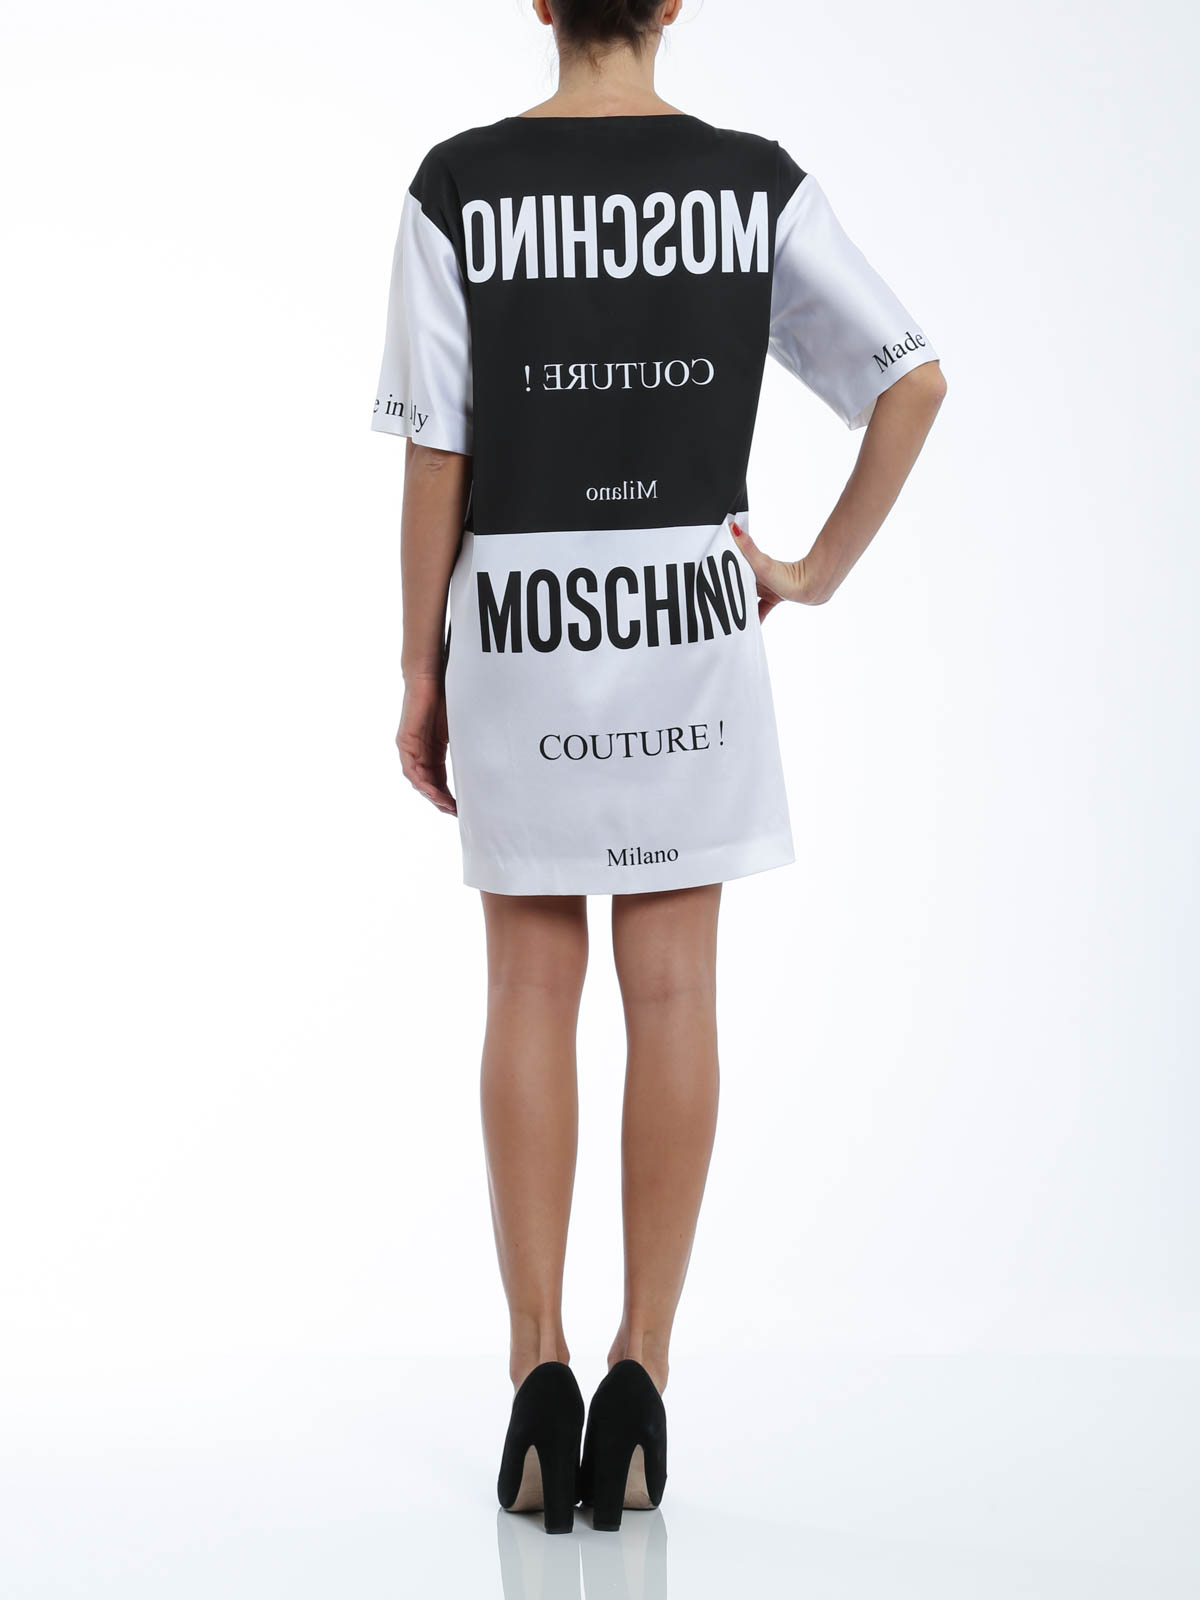 Moschino - Short dress with Moschino 